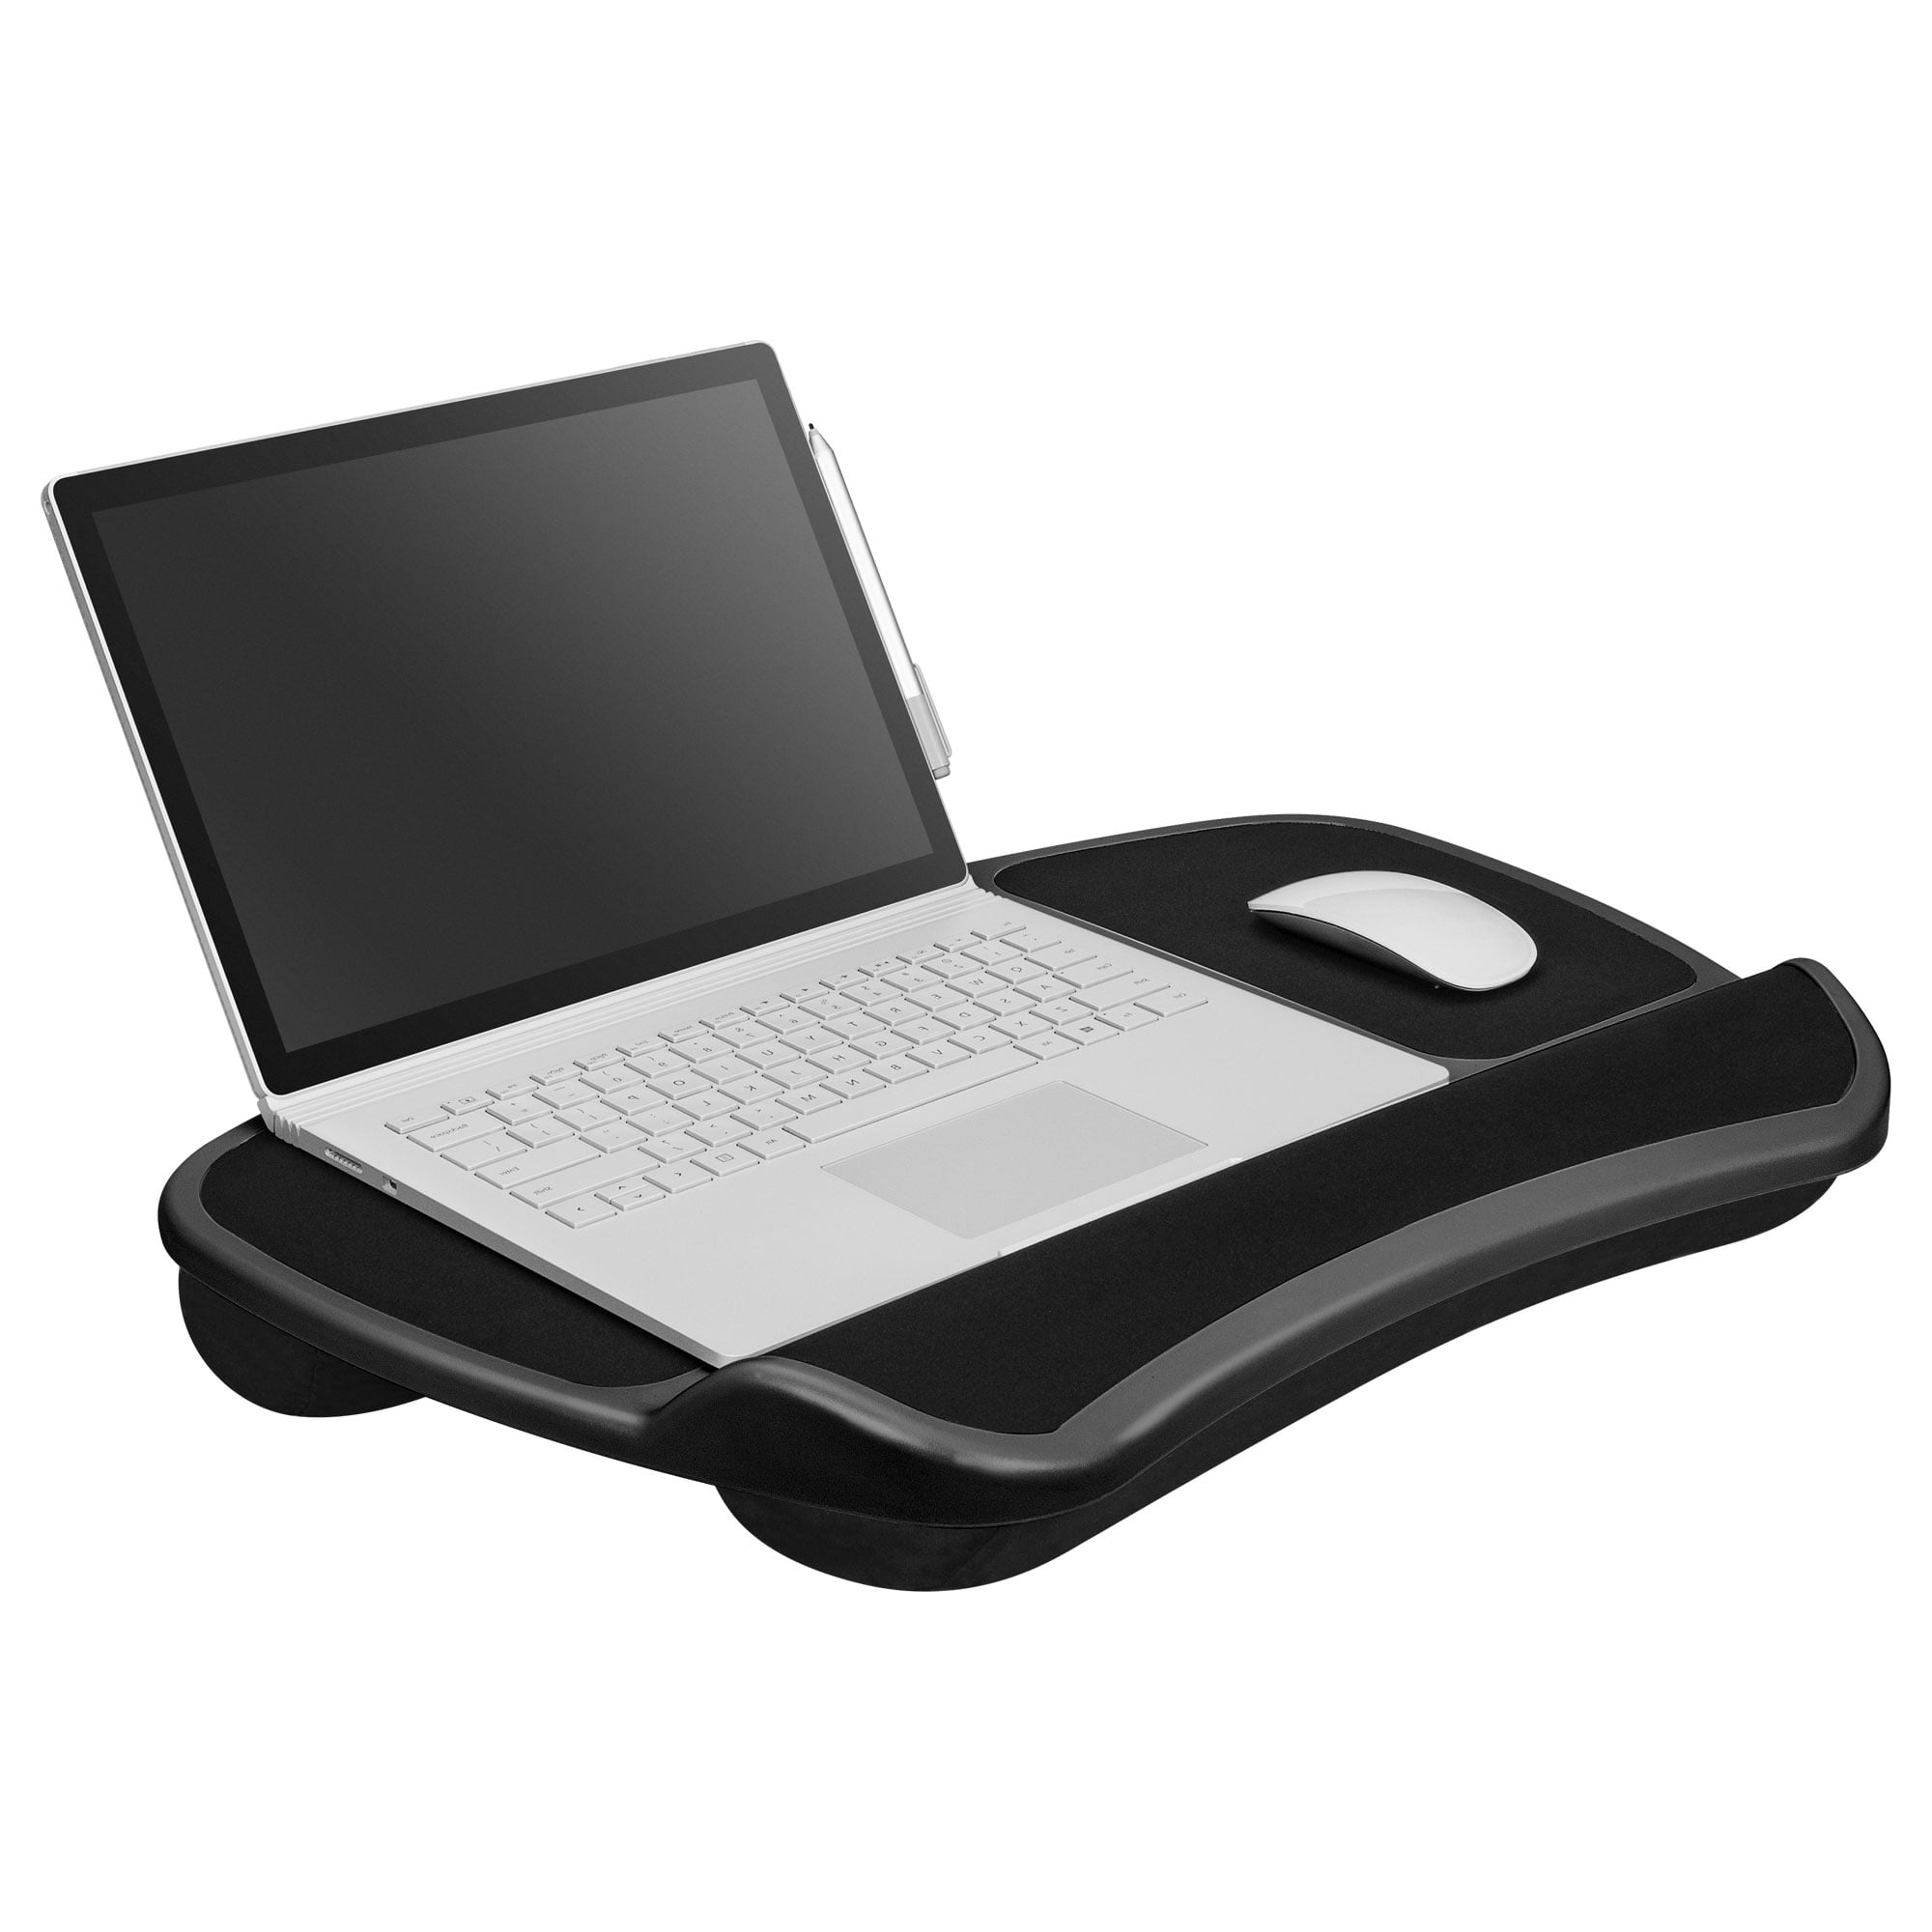 Laptop Lap Desk Black Fits up to 15 6 laptop 